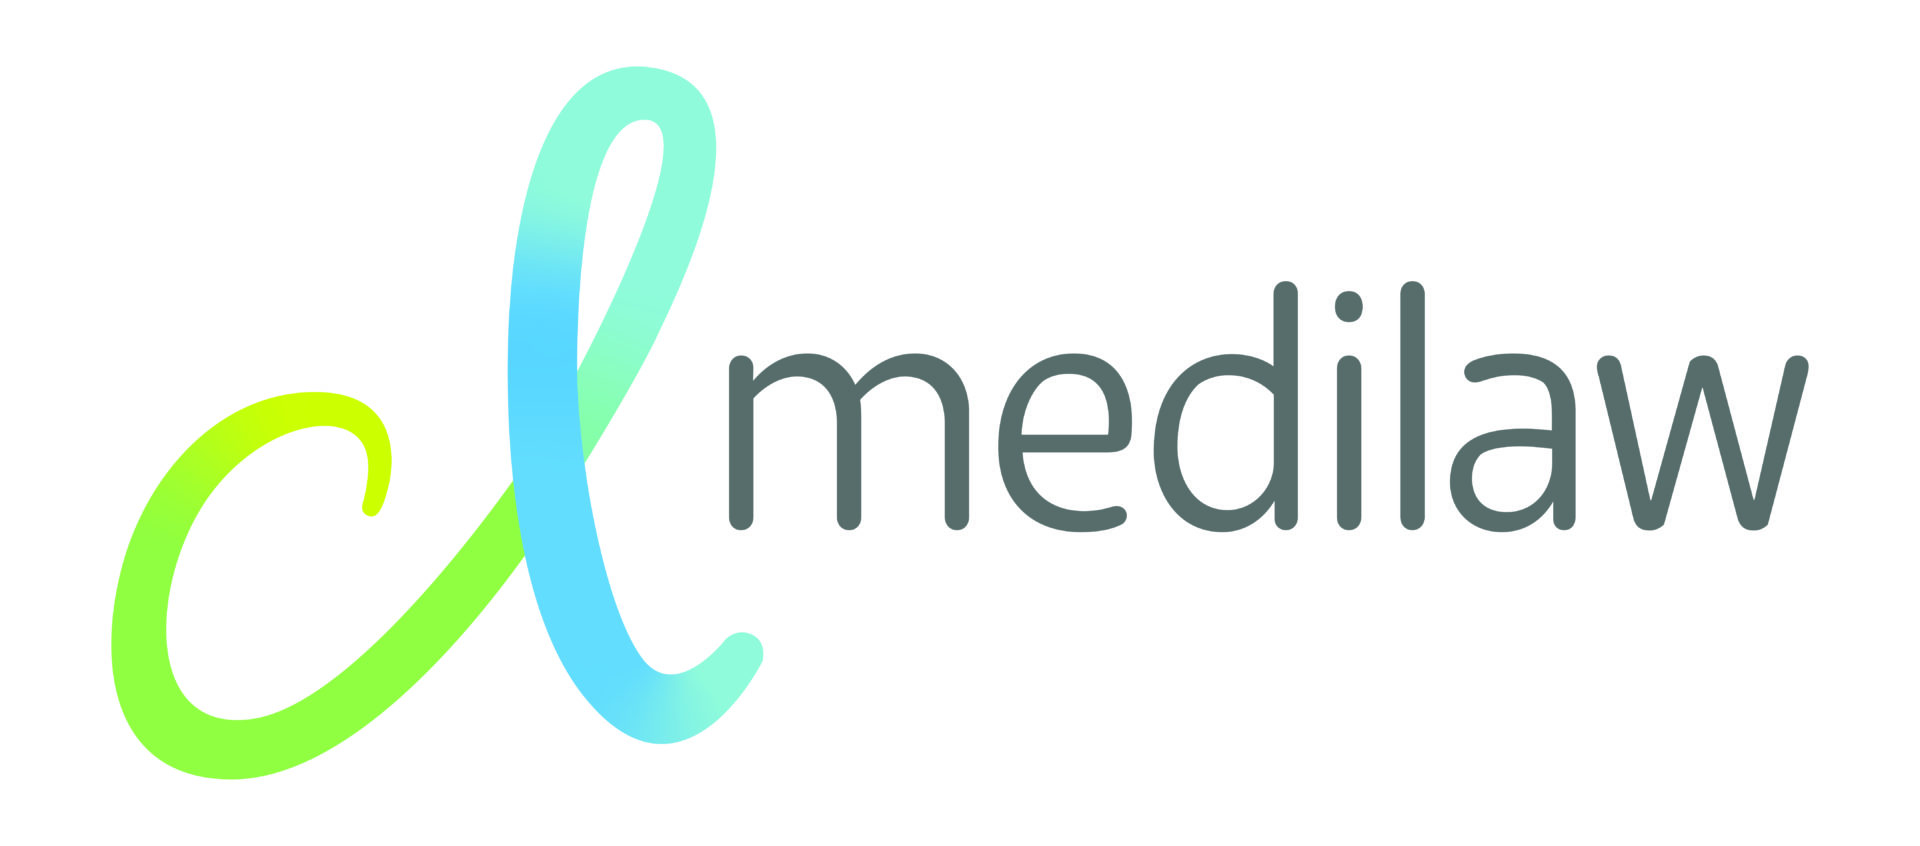 CL Medilaw logo